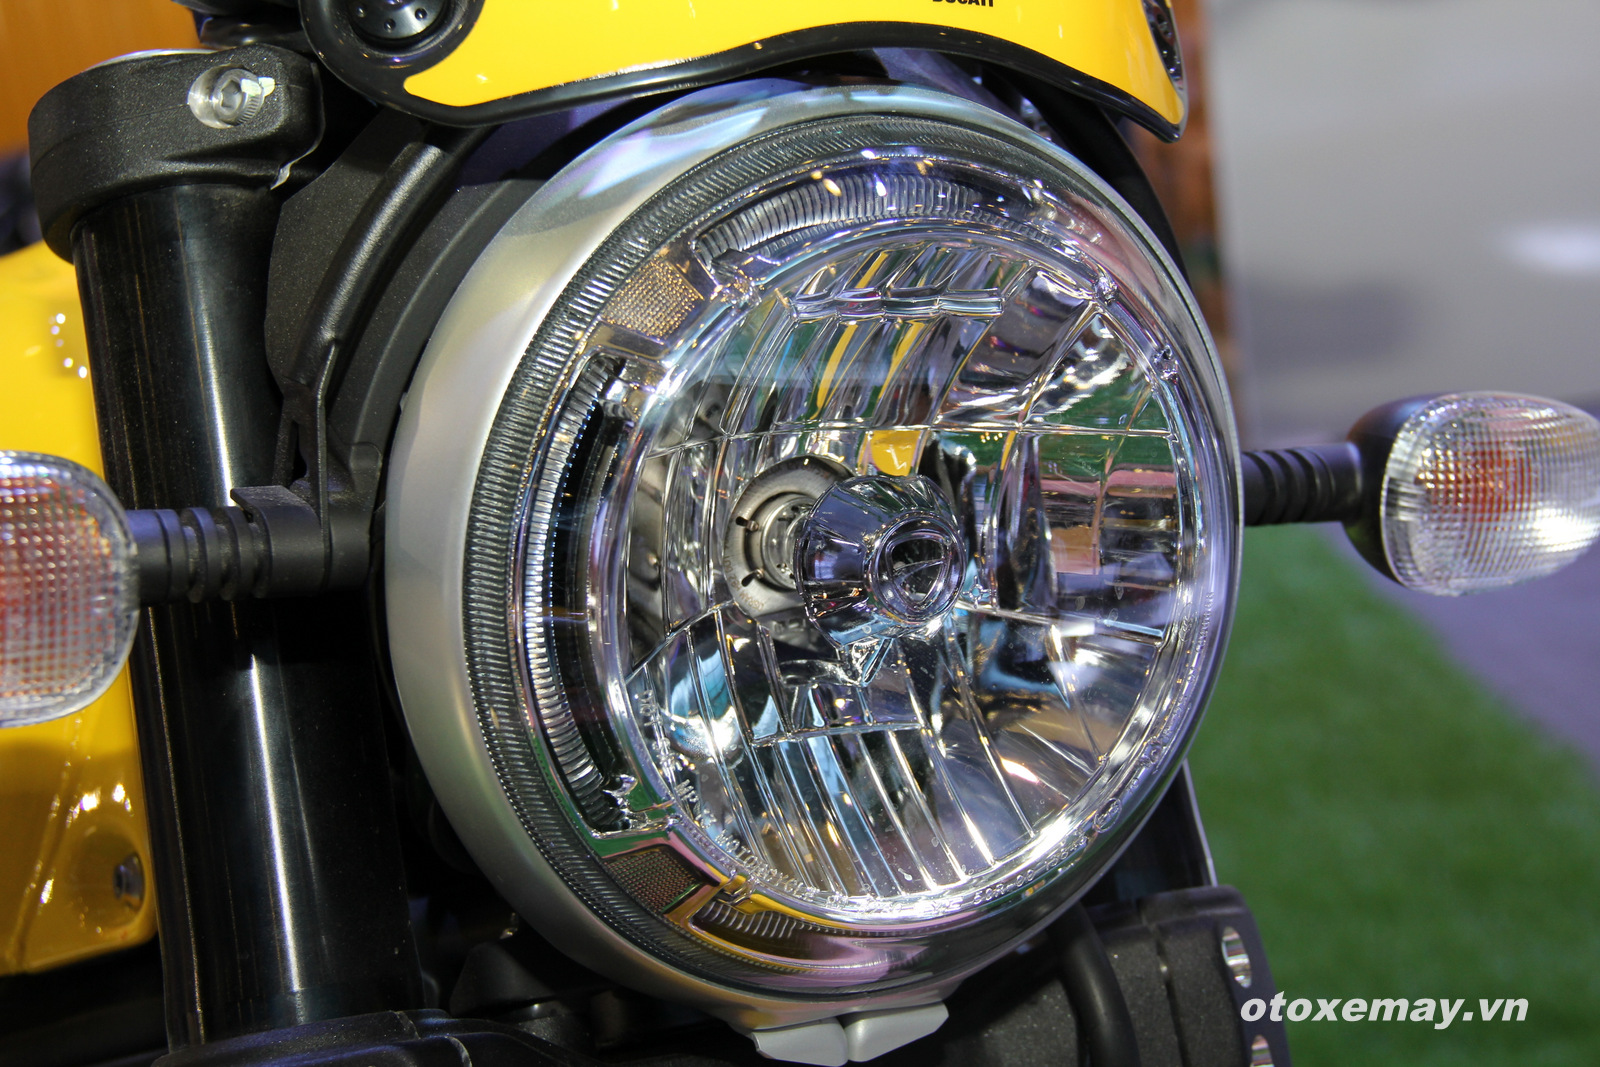 VIMS 2015: Cá tính Ducati khuấy động triển lãm_anh10